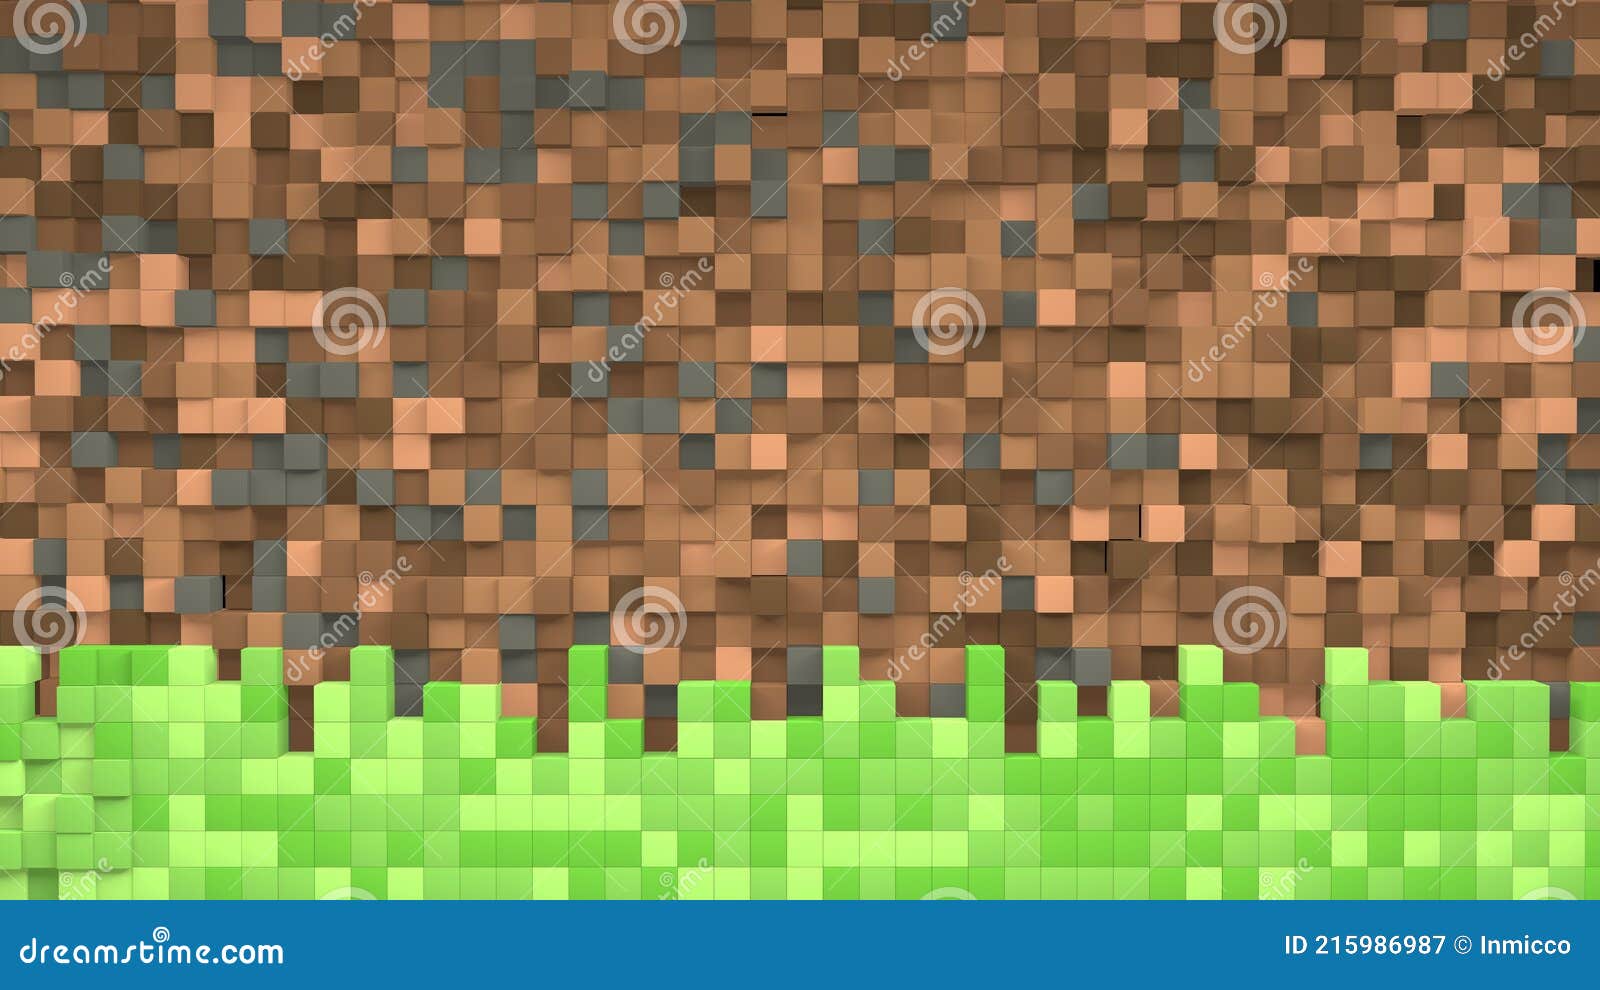 minecraft grass backgrounds